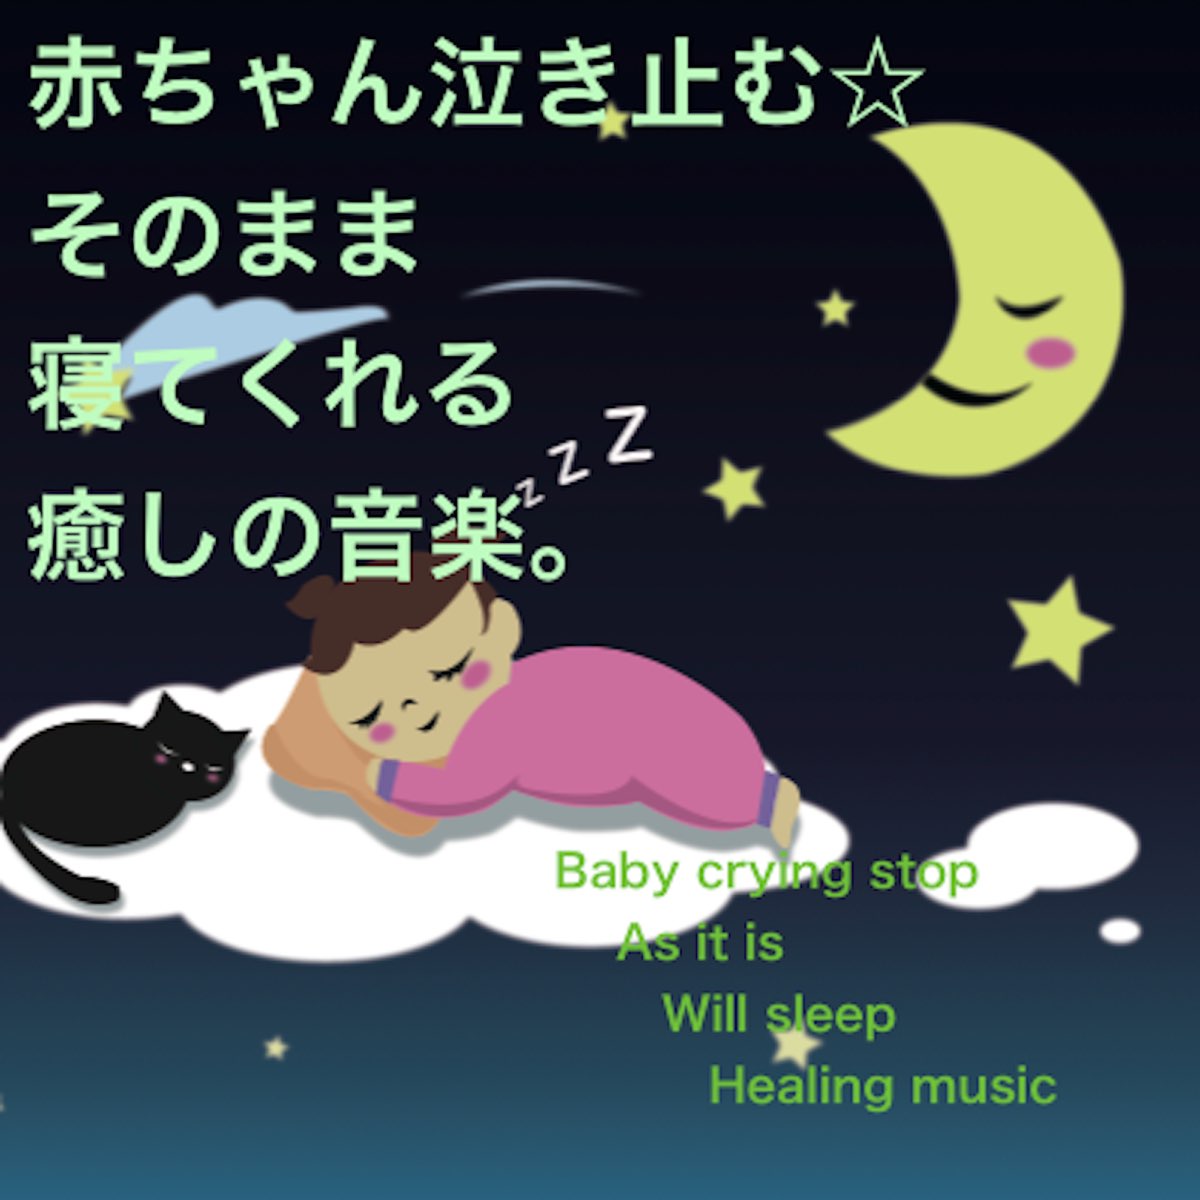 赤ちゃん泣き止む そのまま 寝てくれる 癒しの音楽 Single Di Baby Music 335 Su Apple Music